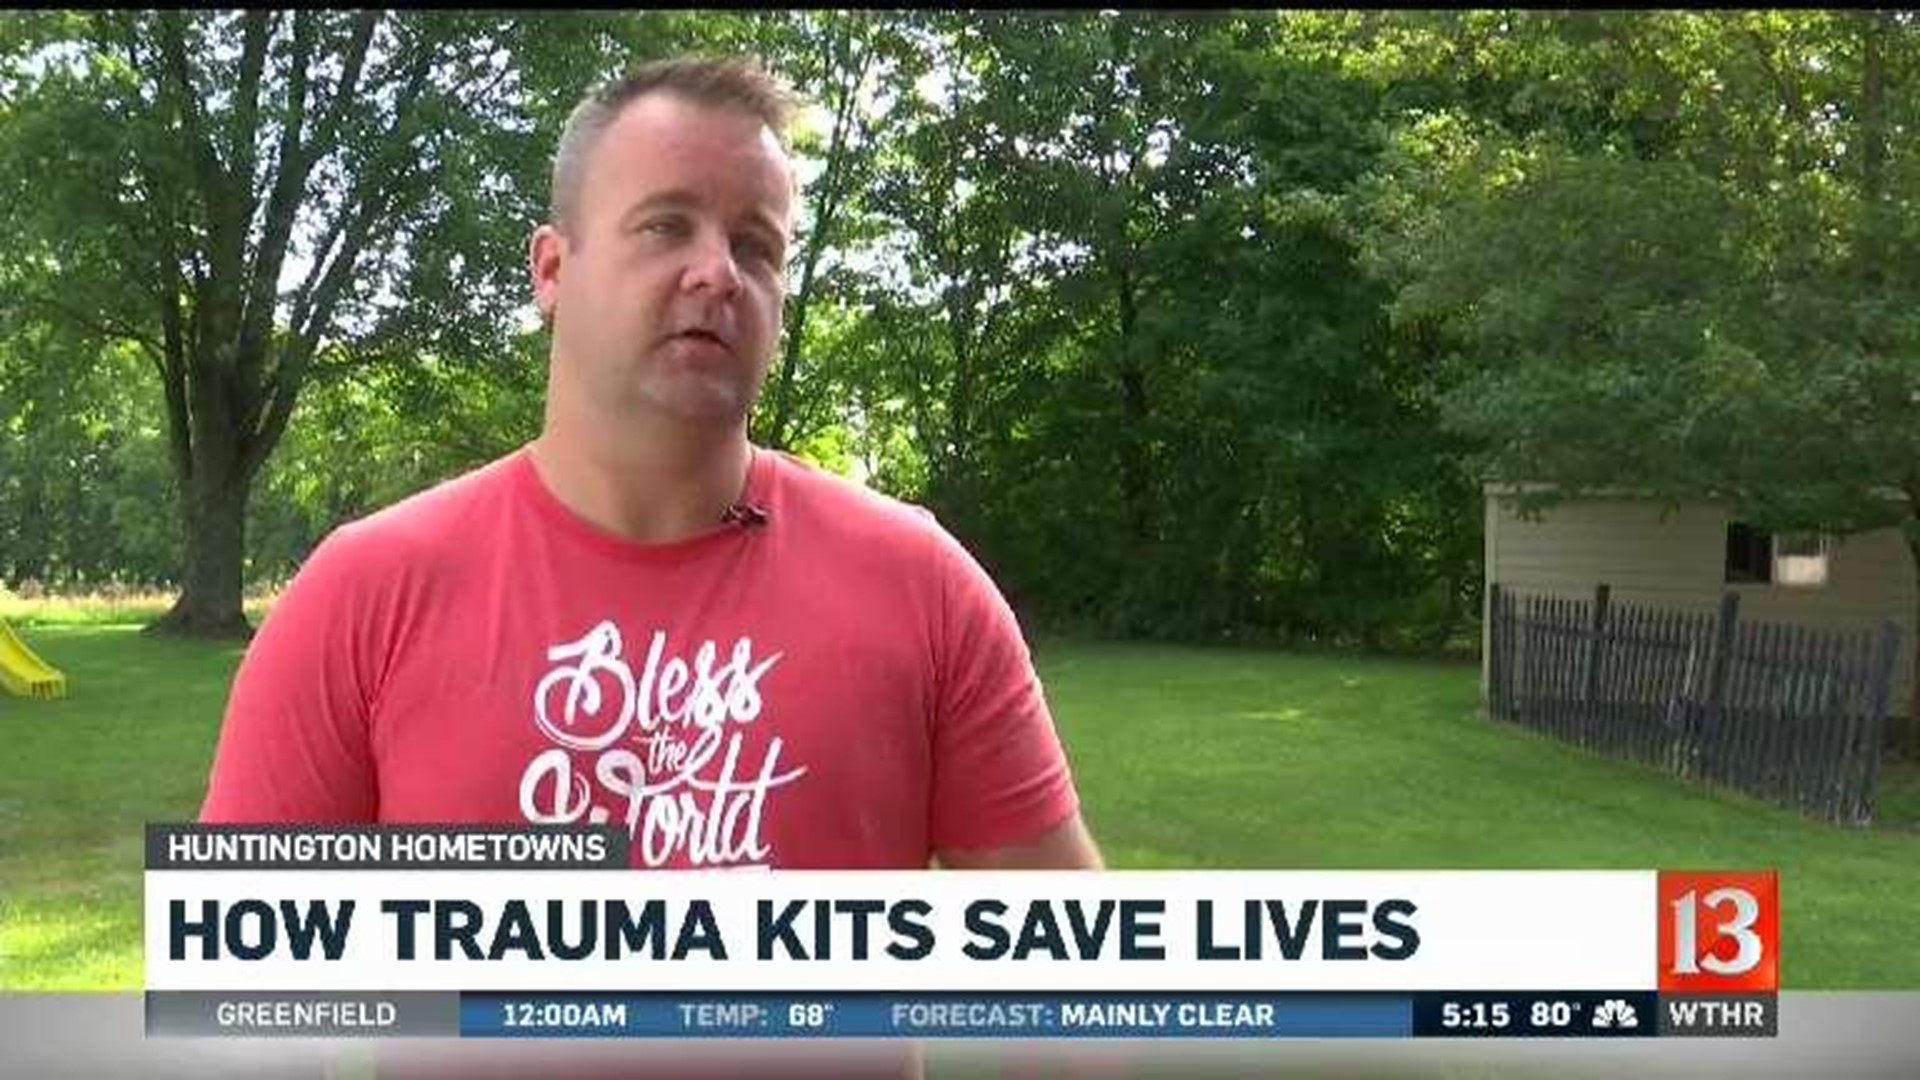 How trauma kits save lives